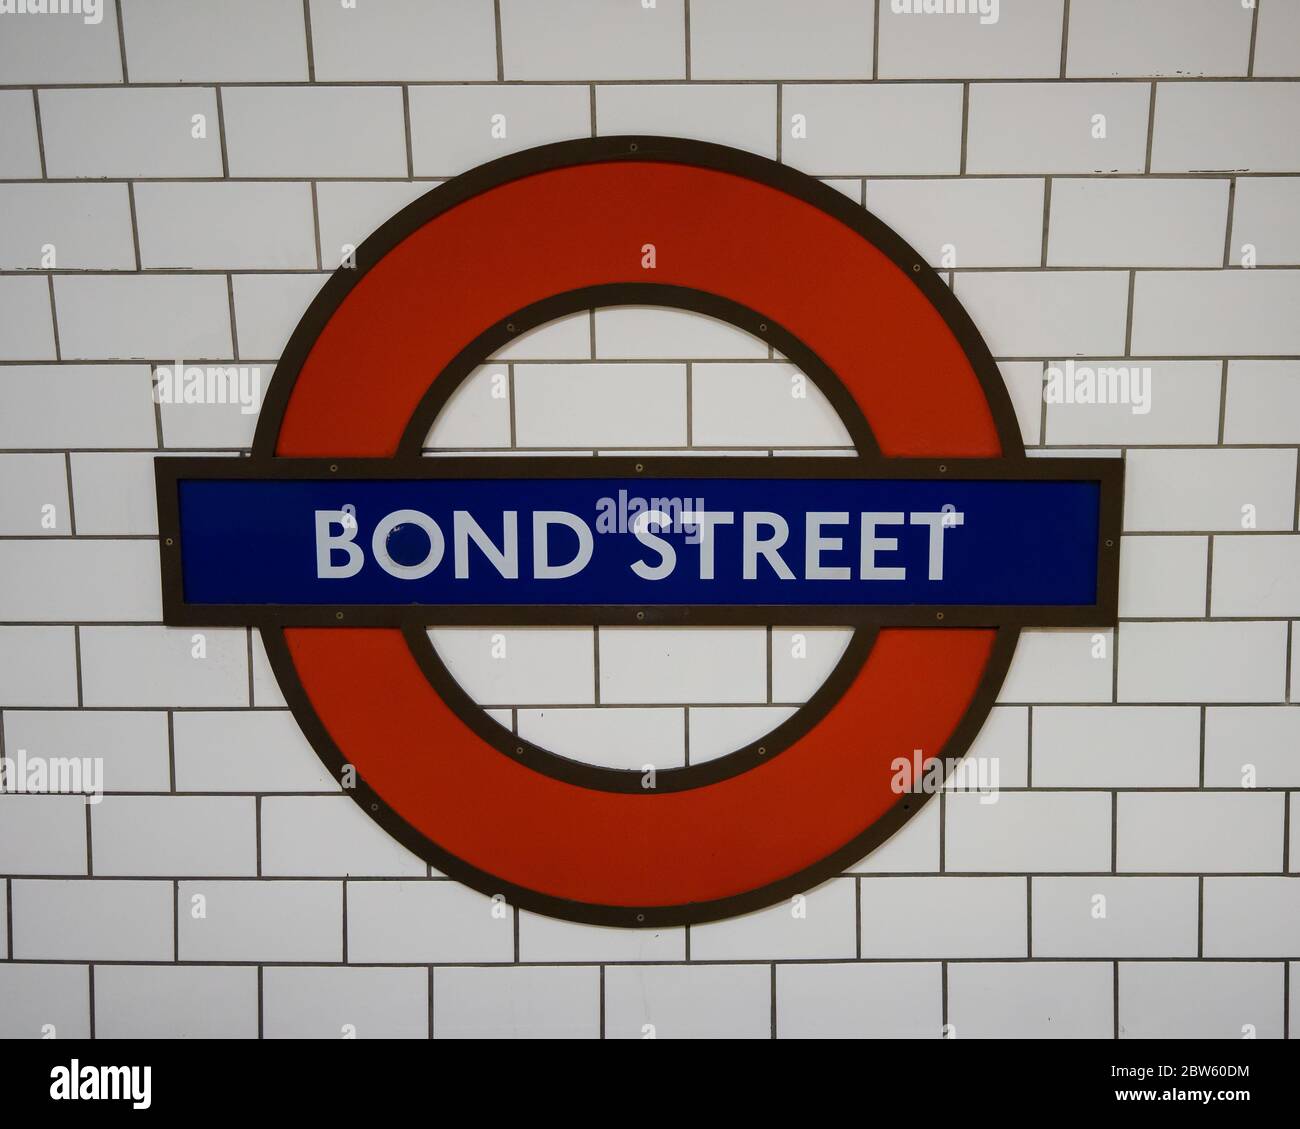 Panneau de métro bond Street Londonn sur la Central Line avec des carreaux blancs derrière. Londres Banque D'Images